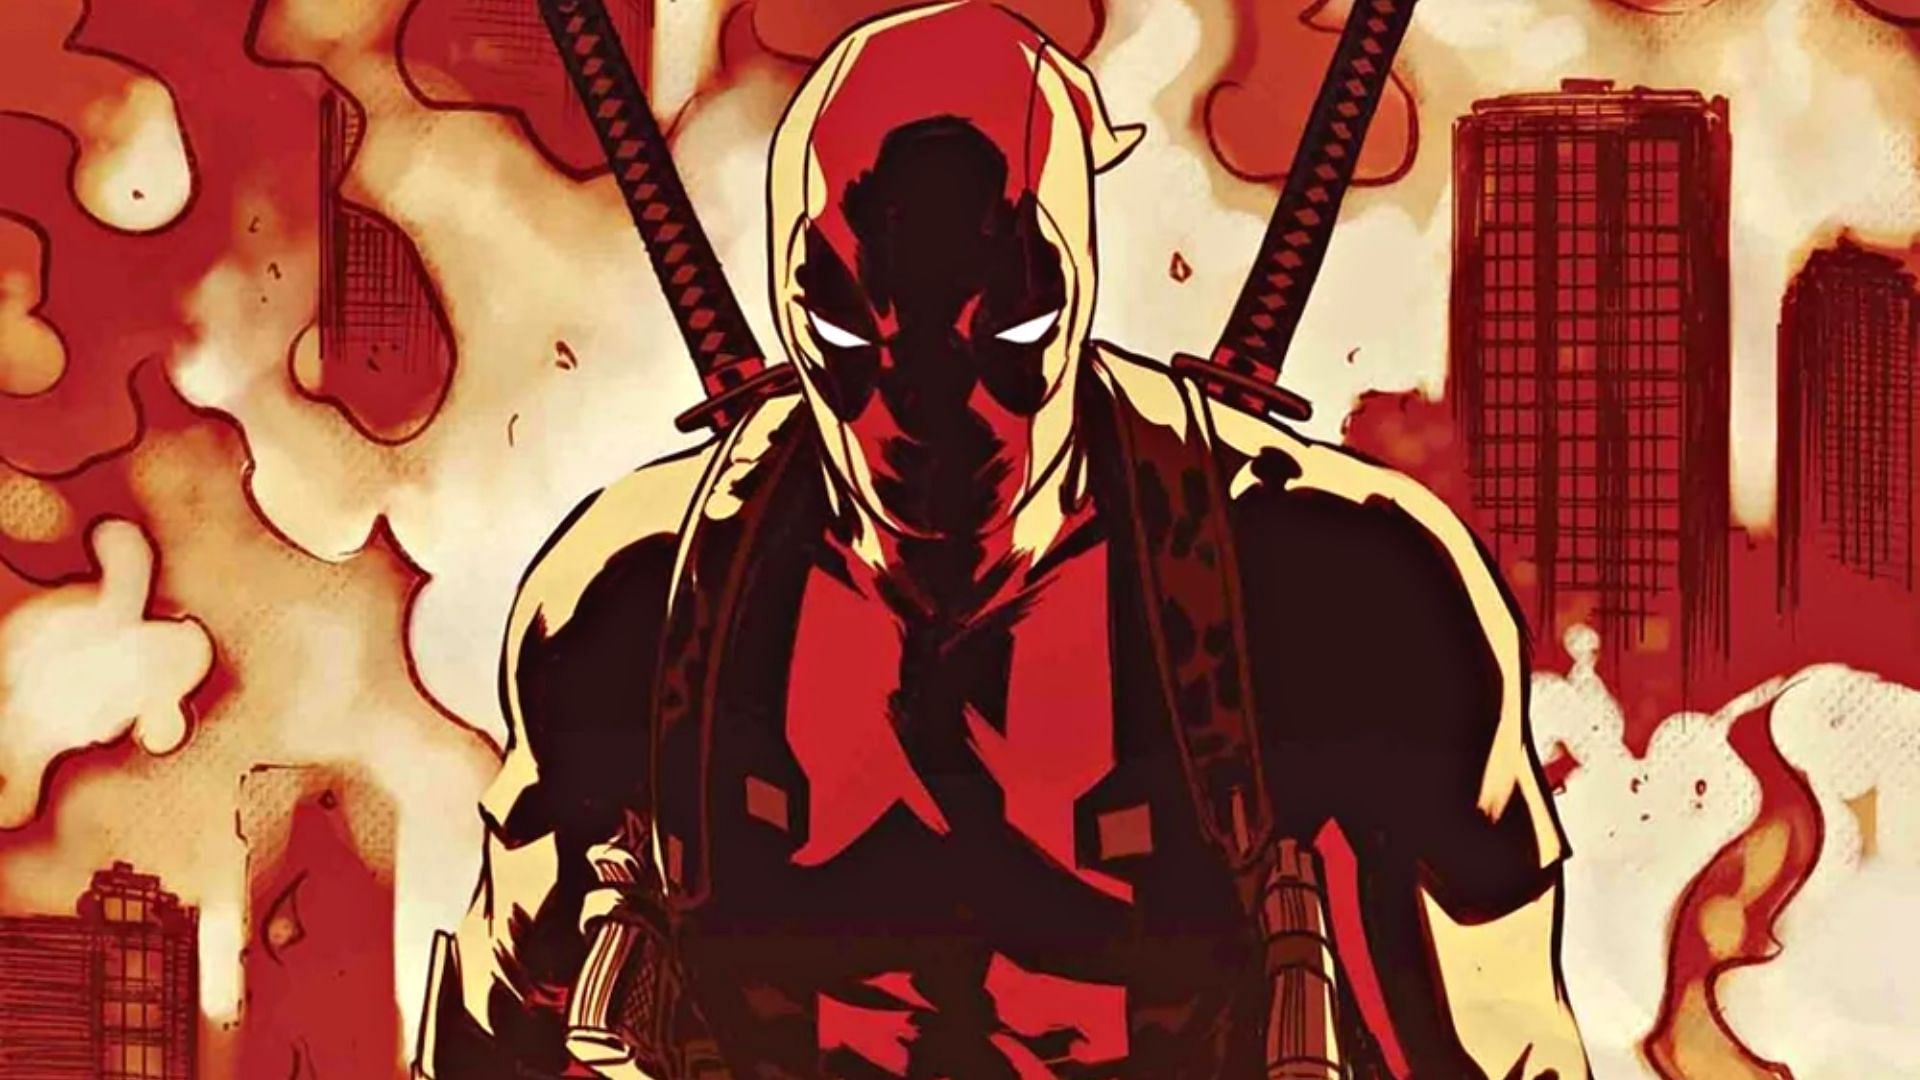 Deadpool: Supreme Fan  Deadpool wallpaper, Supreme wallpaper, Deadpool art